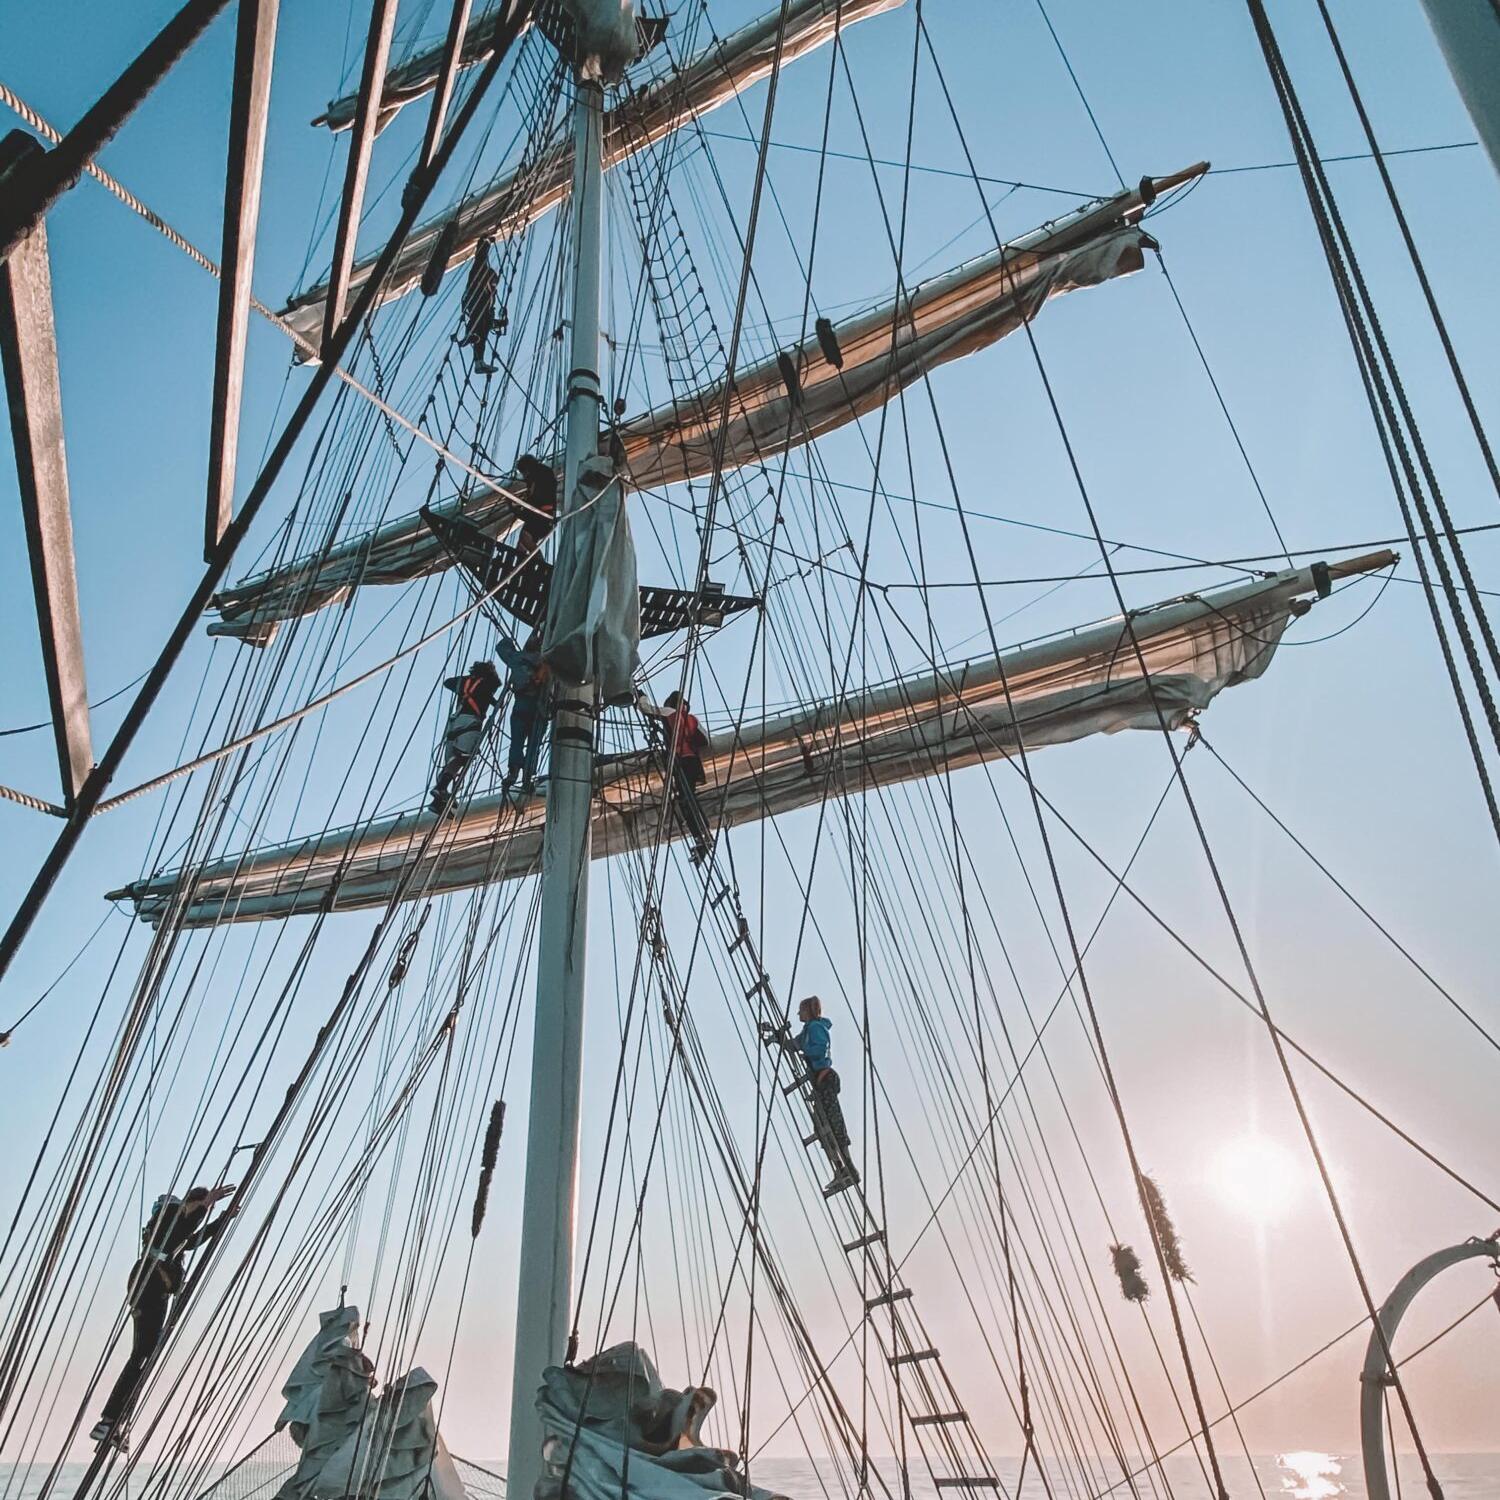 STAB zeilen hijsen - The Tall Ships Races 2022